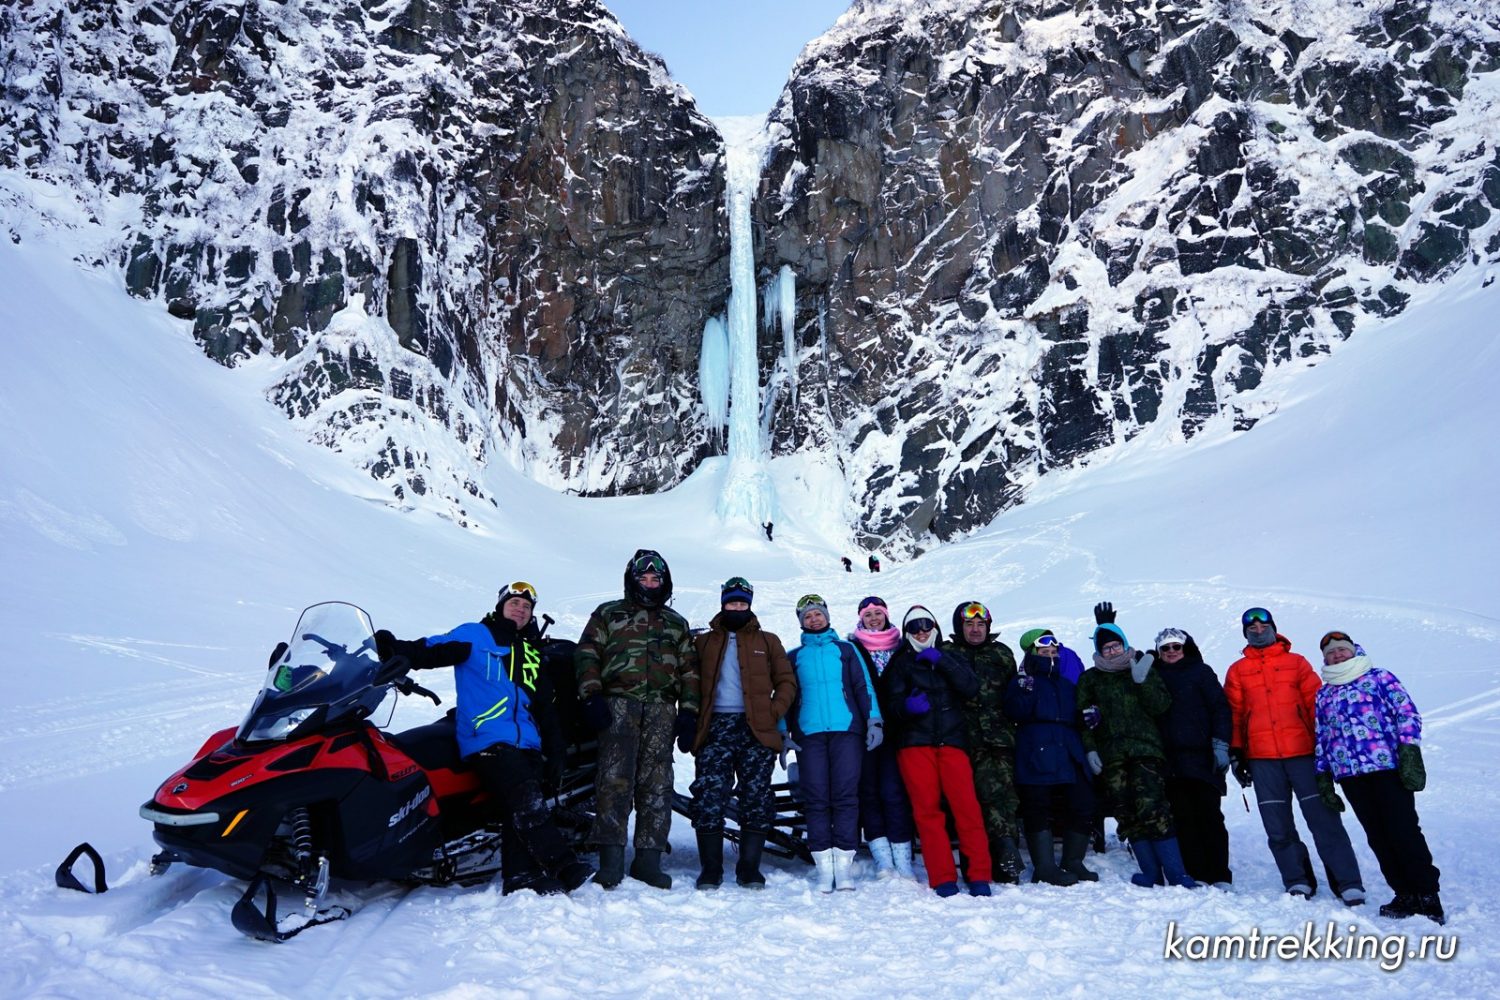 Экскурсии на Камчатке 2020, туры на снегоходах Камчатка